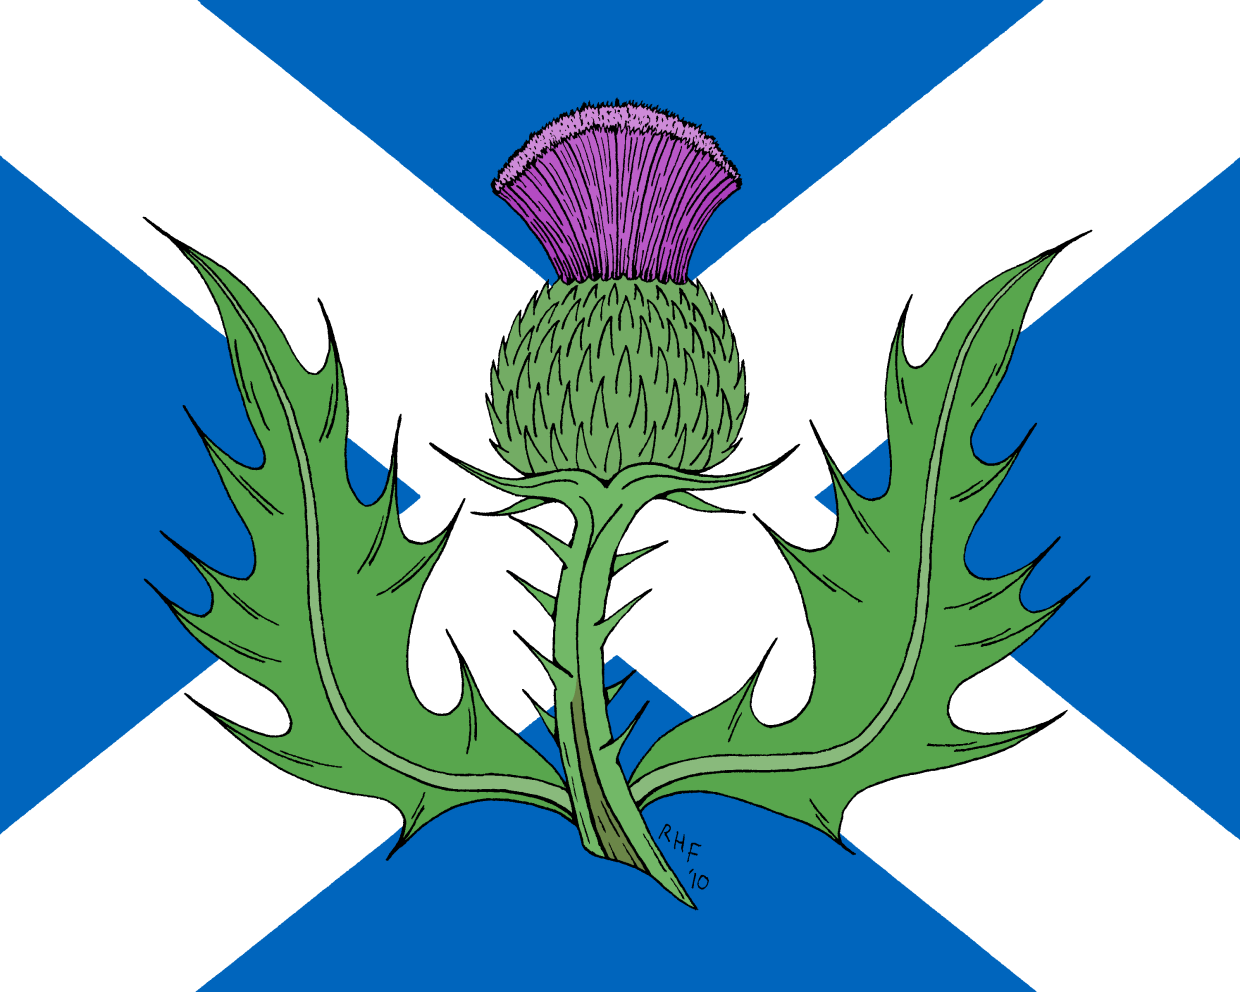 Цветок чертополоха символ Шотландии. Национальный символ Шотландии чертополох. Thistle символ Шотландии. Национальный цветок Шотландии чертополох. Scotland plant symbol